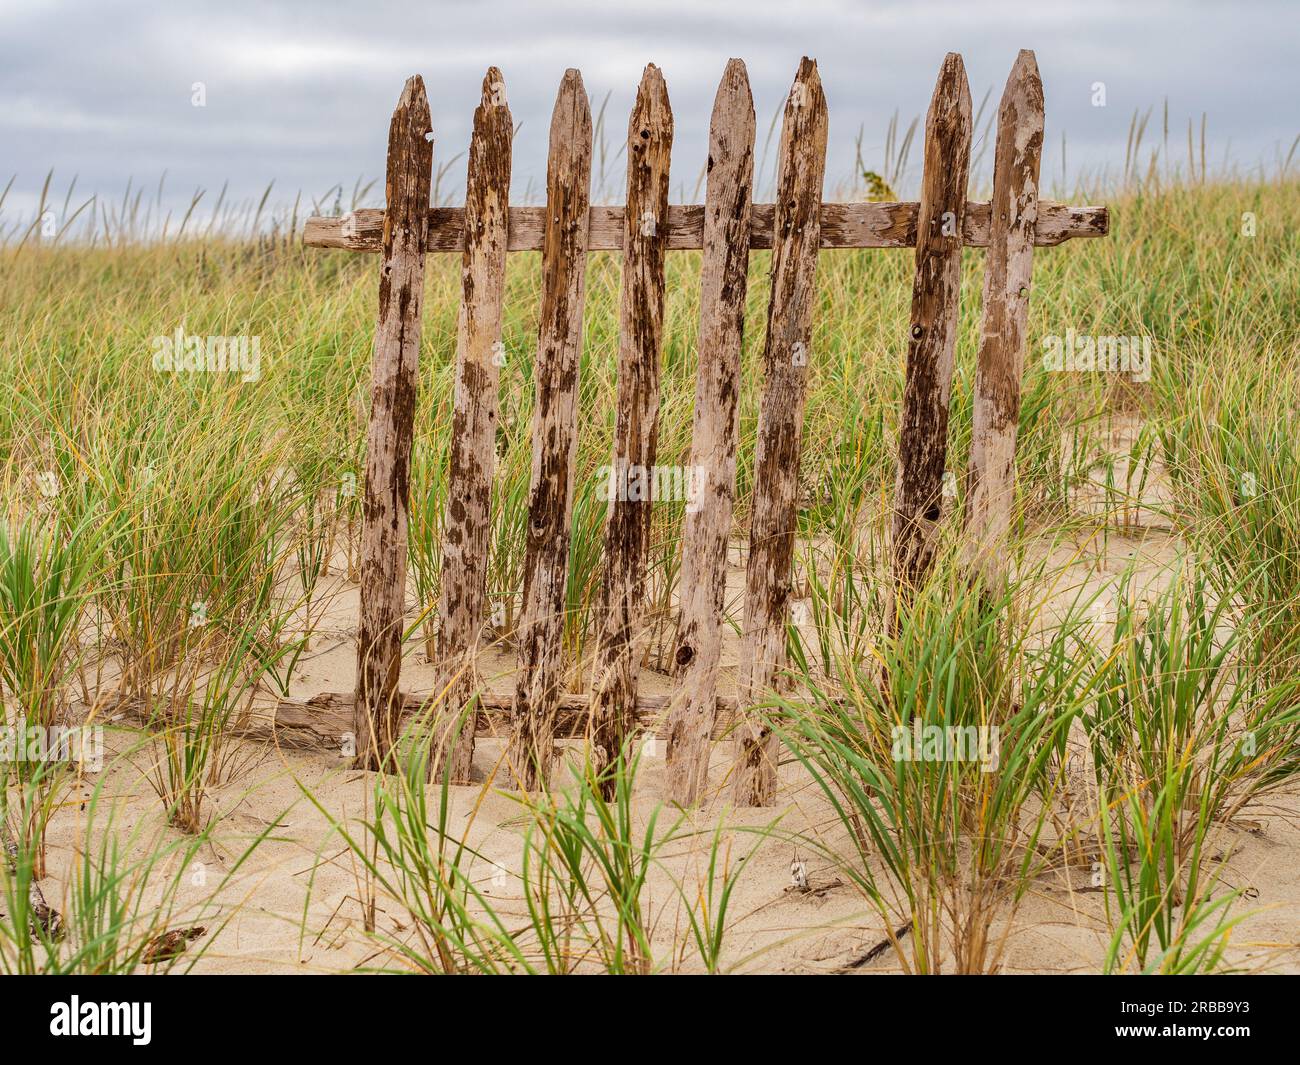 In uno sfondo di dune di sabbia erbose, un frammento di una recinzione di legno invecchiata si erge in modo resiliente. Foto Stock